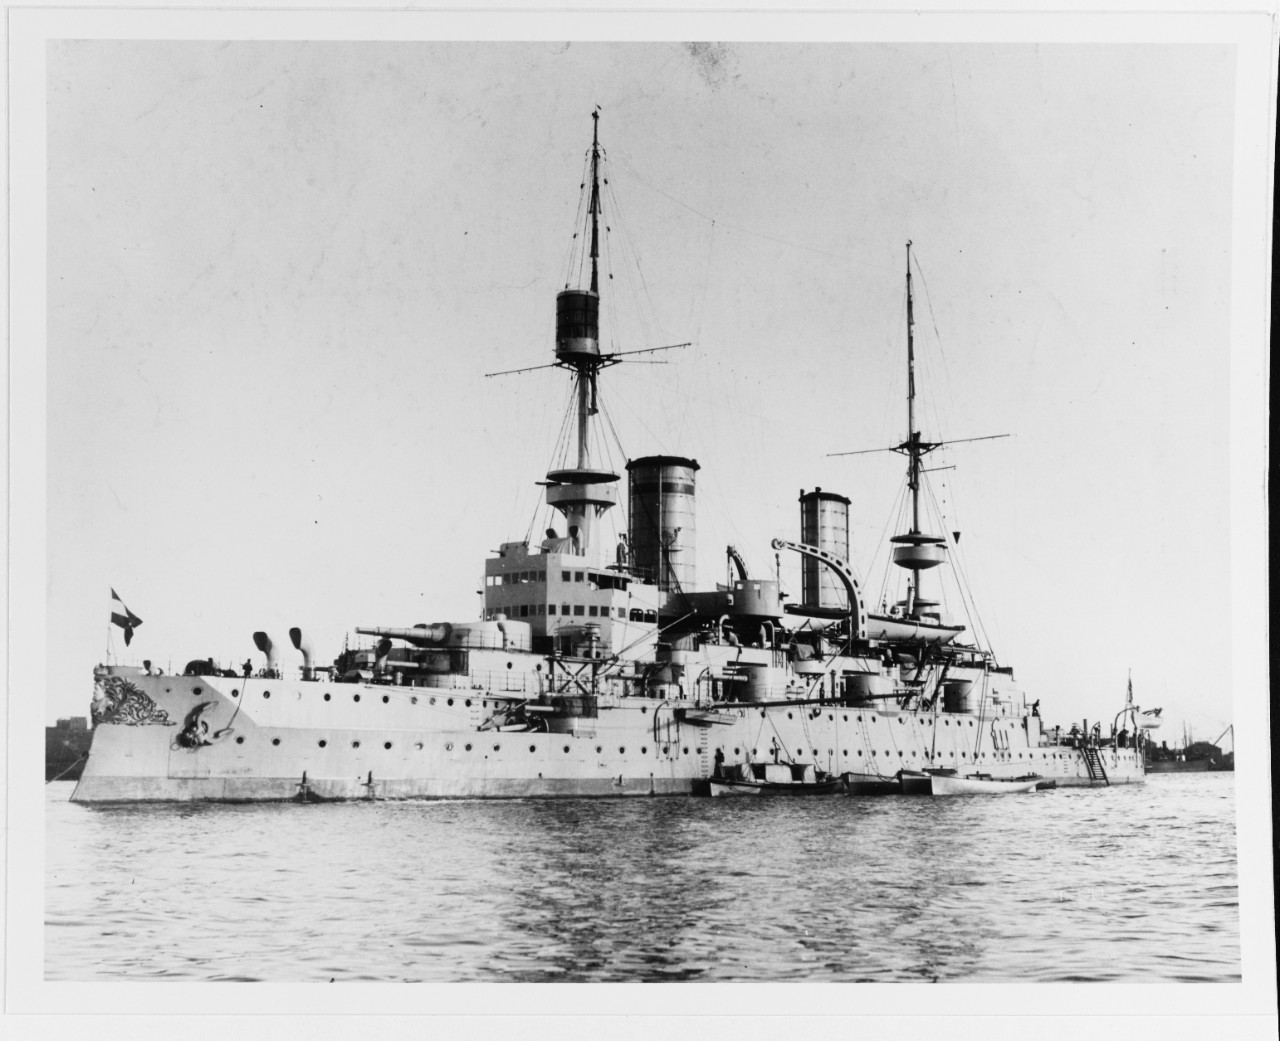 KAISER FRIEDRICH III (German battleship, 1896-1919)